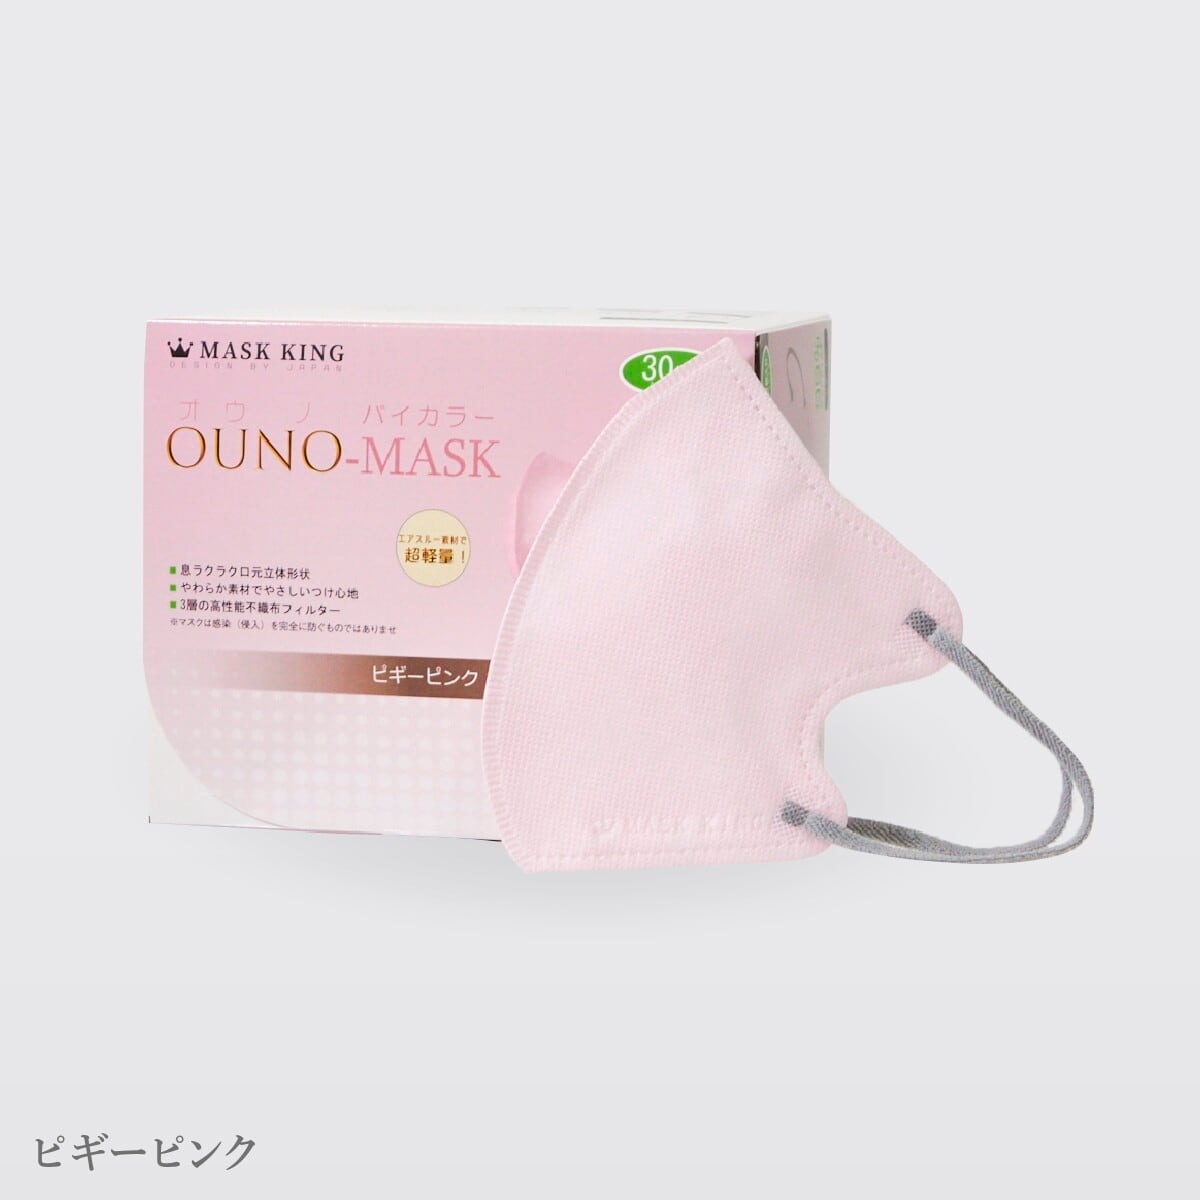 バイカラー3D立体不織布マスク 30枚入り OUNO-MASK | AMI